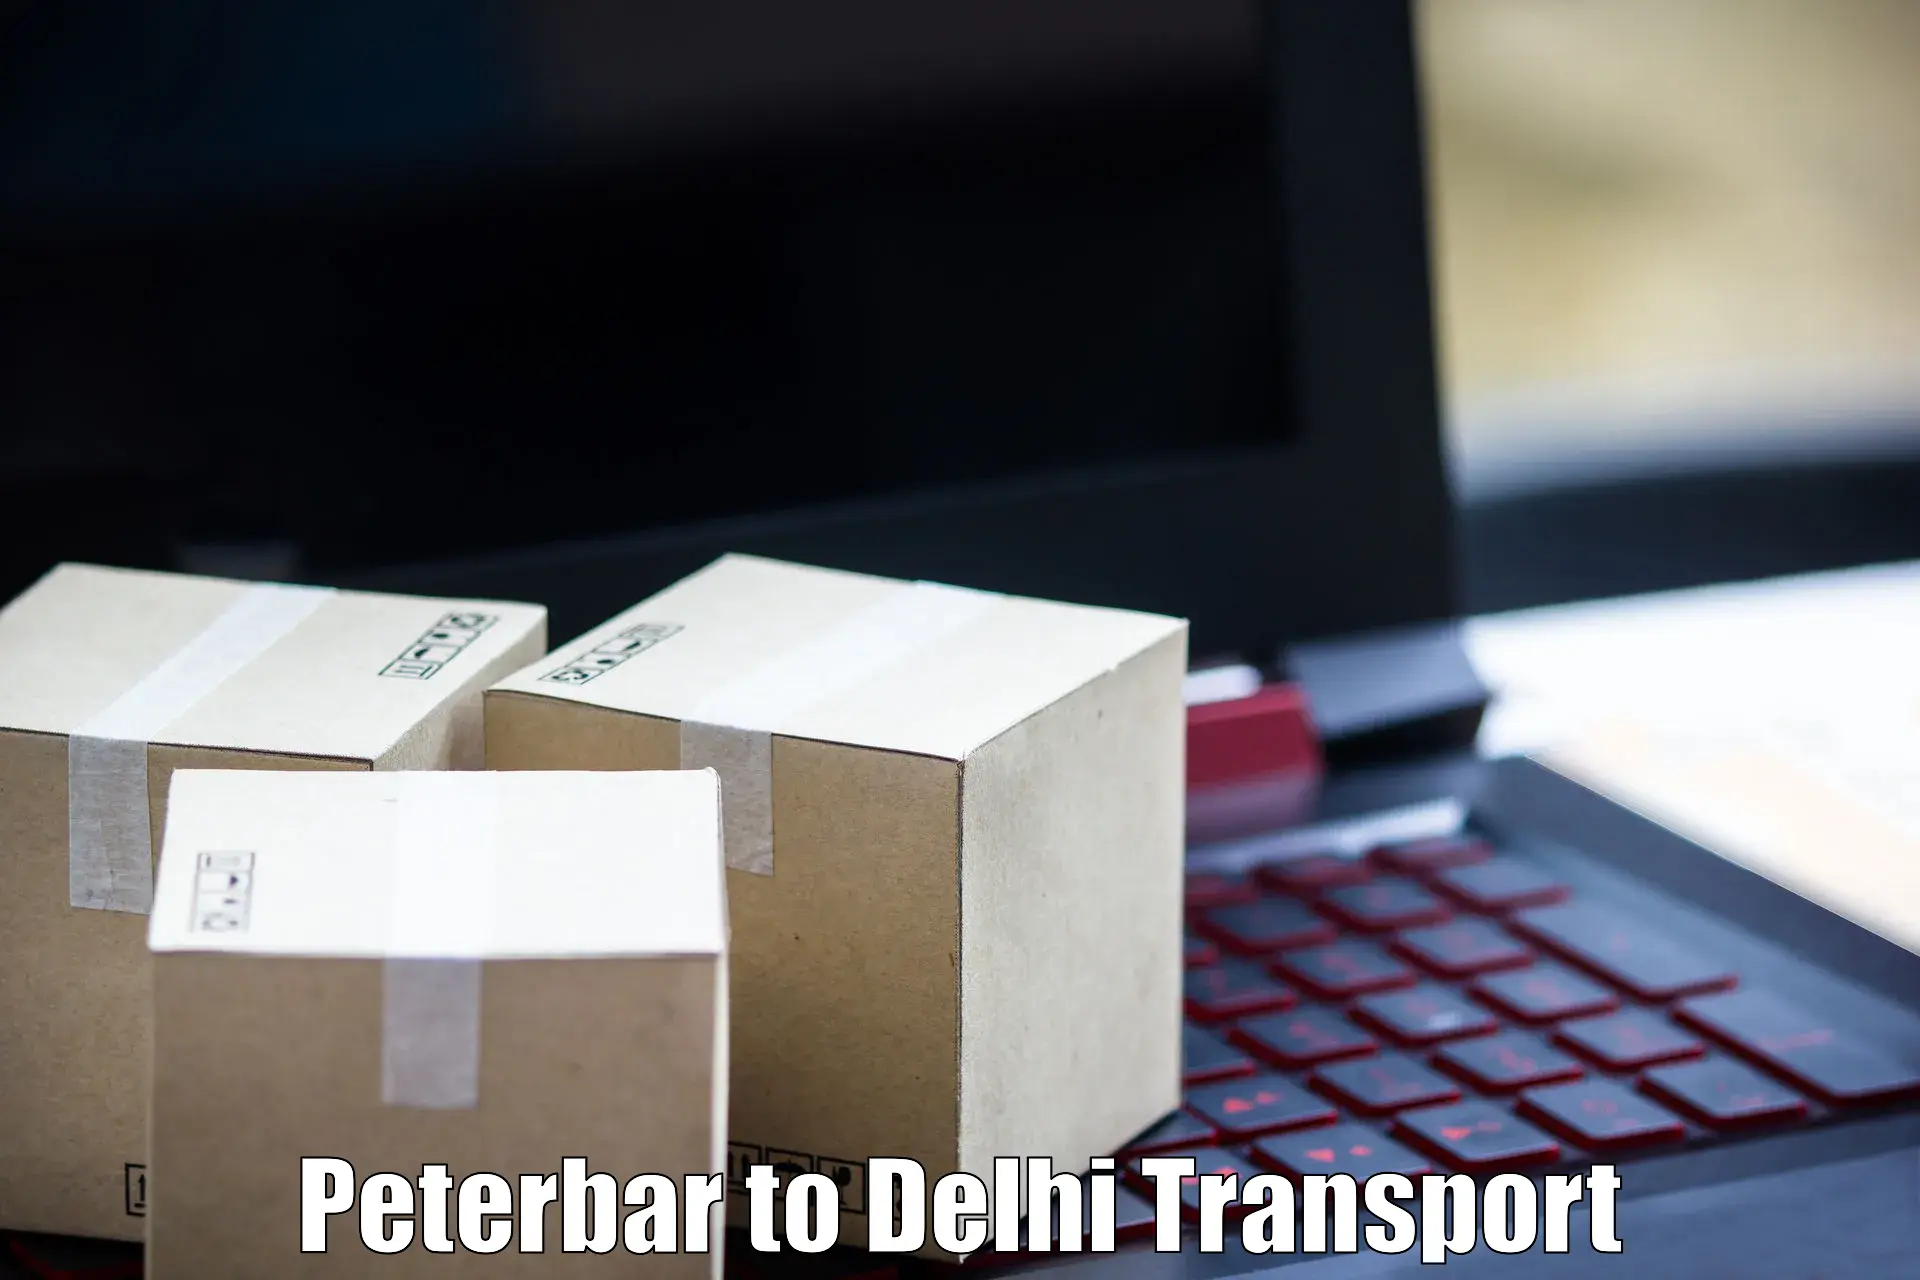 Road transport services Peterbar to IIT Delhi